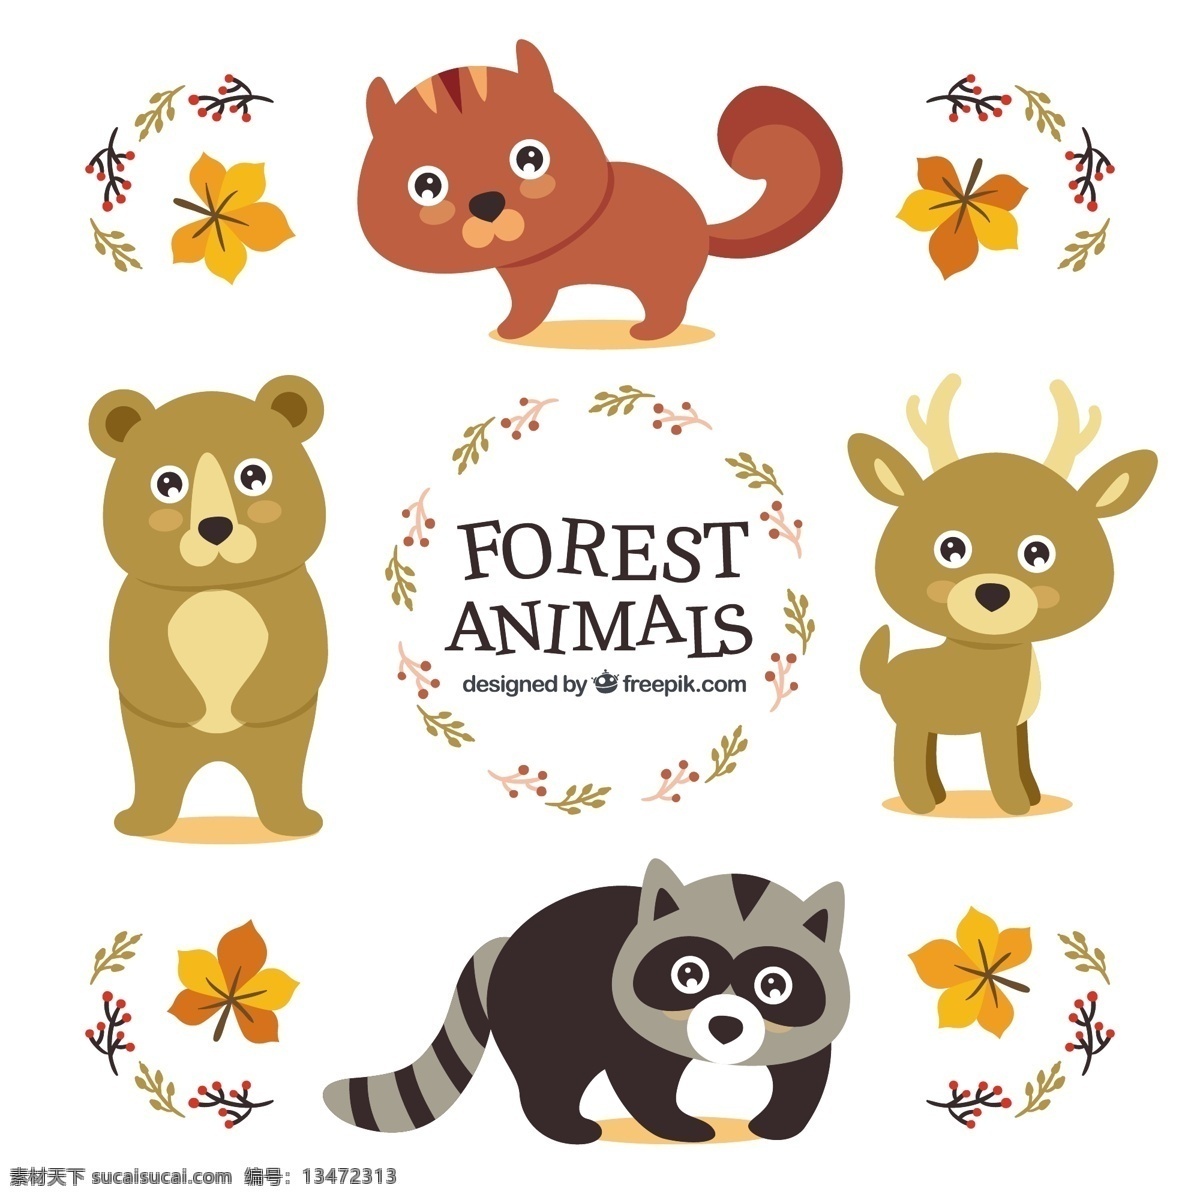 可爱 野生动物 明亮的眼睛 一方面 叶 动物 手绘 森林 叶子 熊的眼睛 画画 有趣 可爱的松鼠 明亮 绘制的 野生的 好的 浣熊 白色